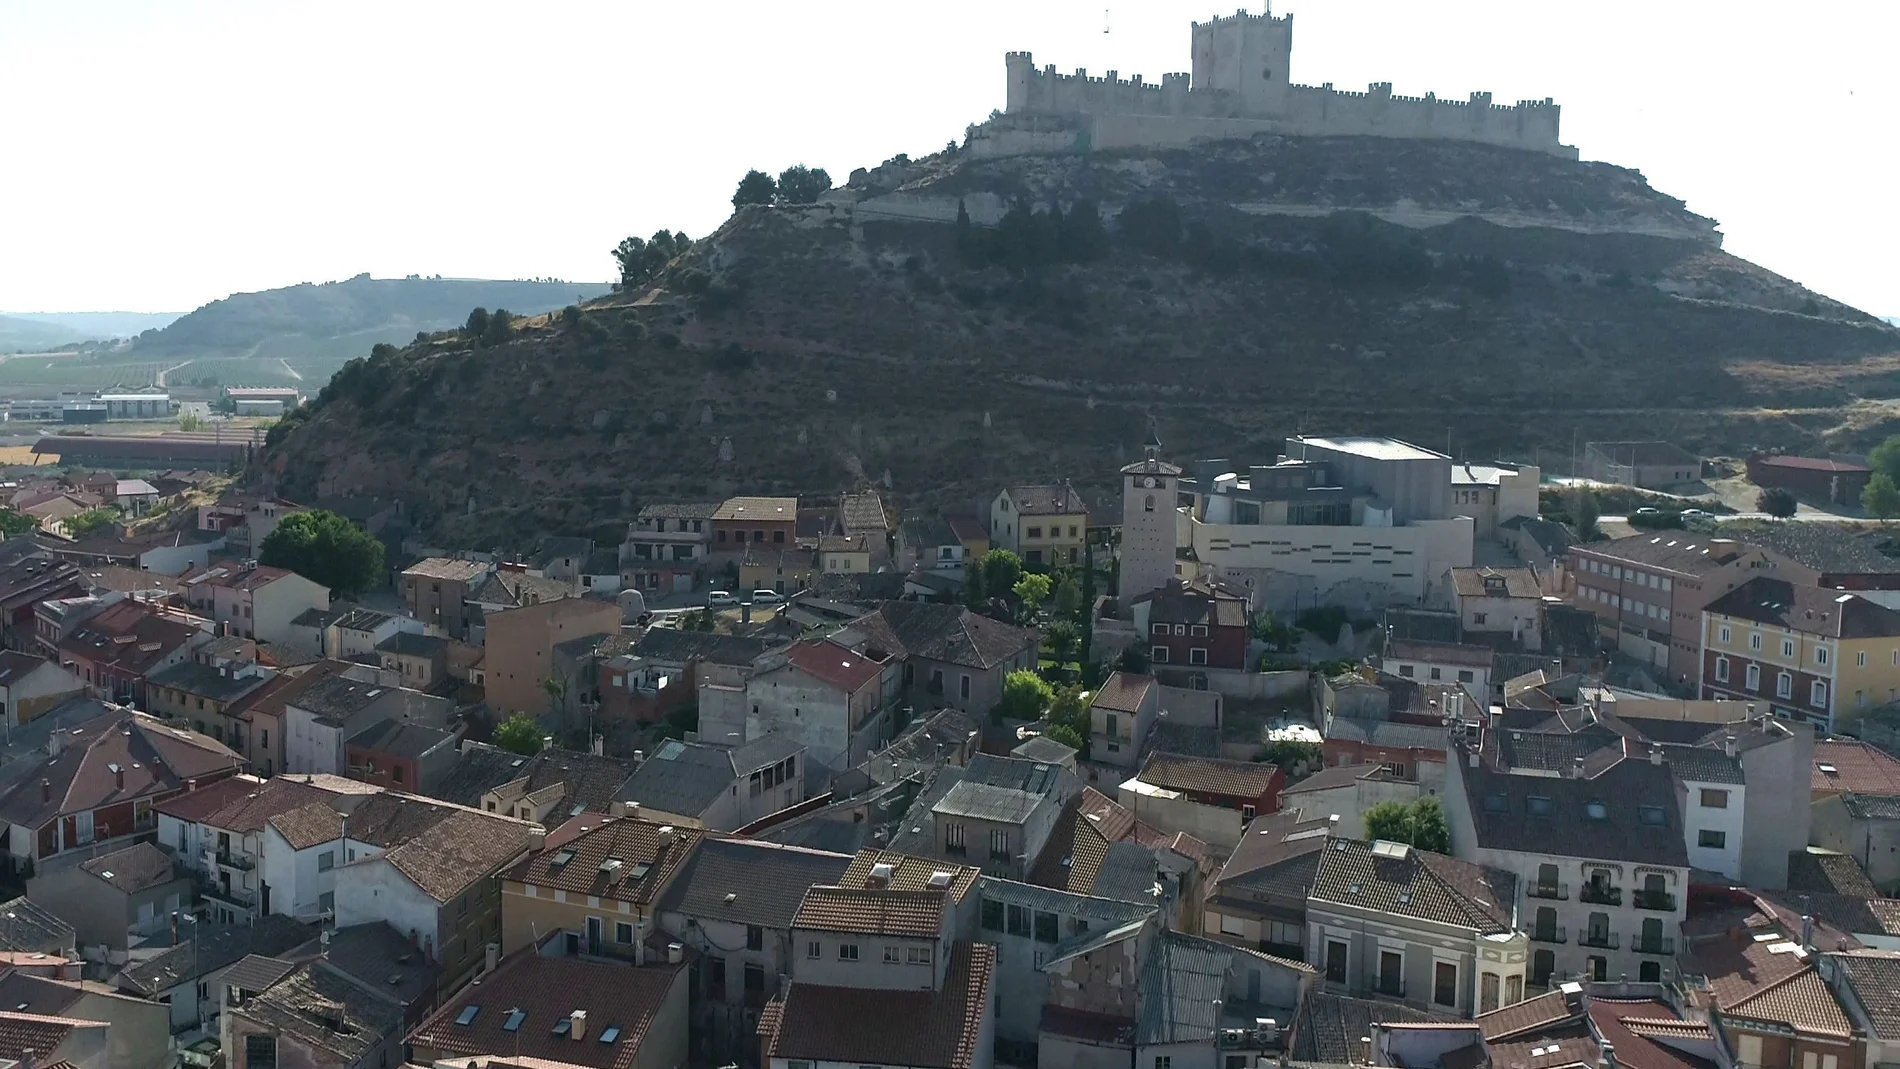 Vista área del casco histórico de Peñafiel con su medieval castillo en lo alto